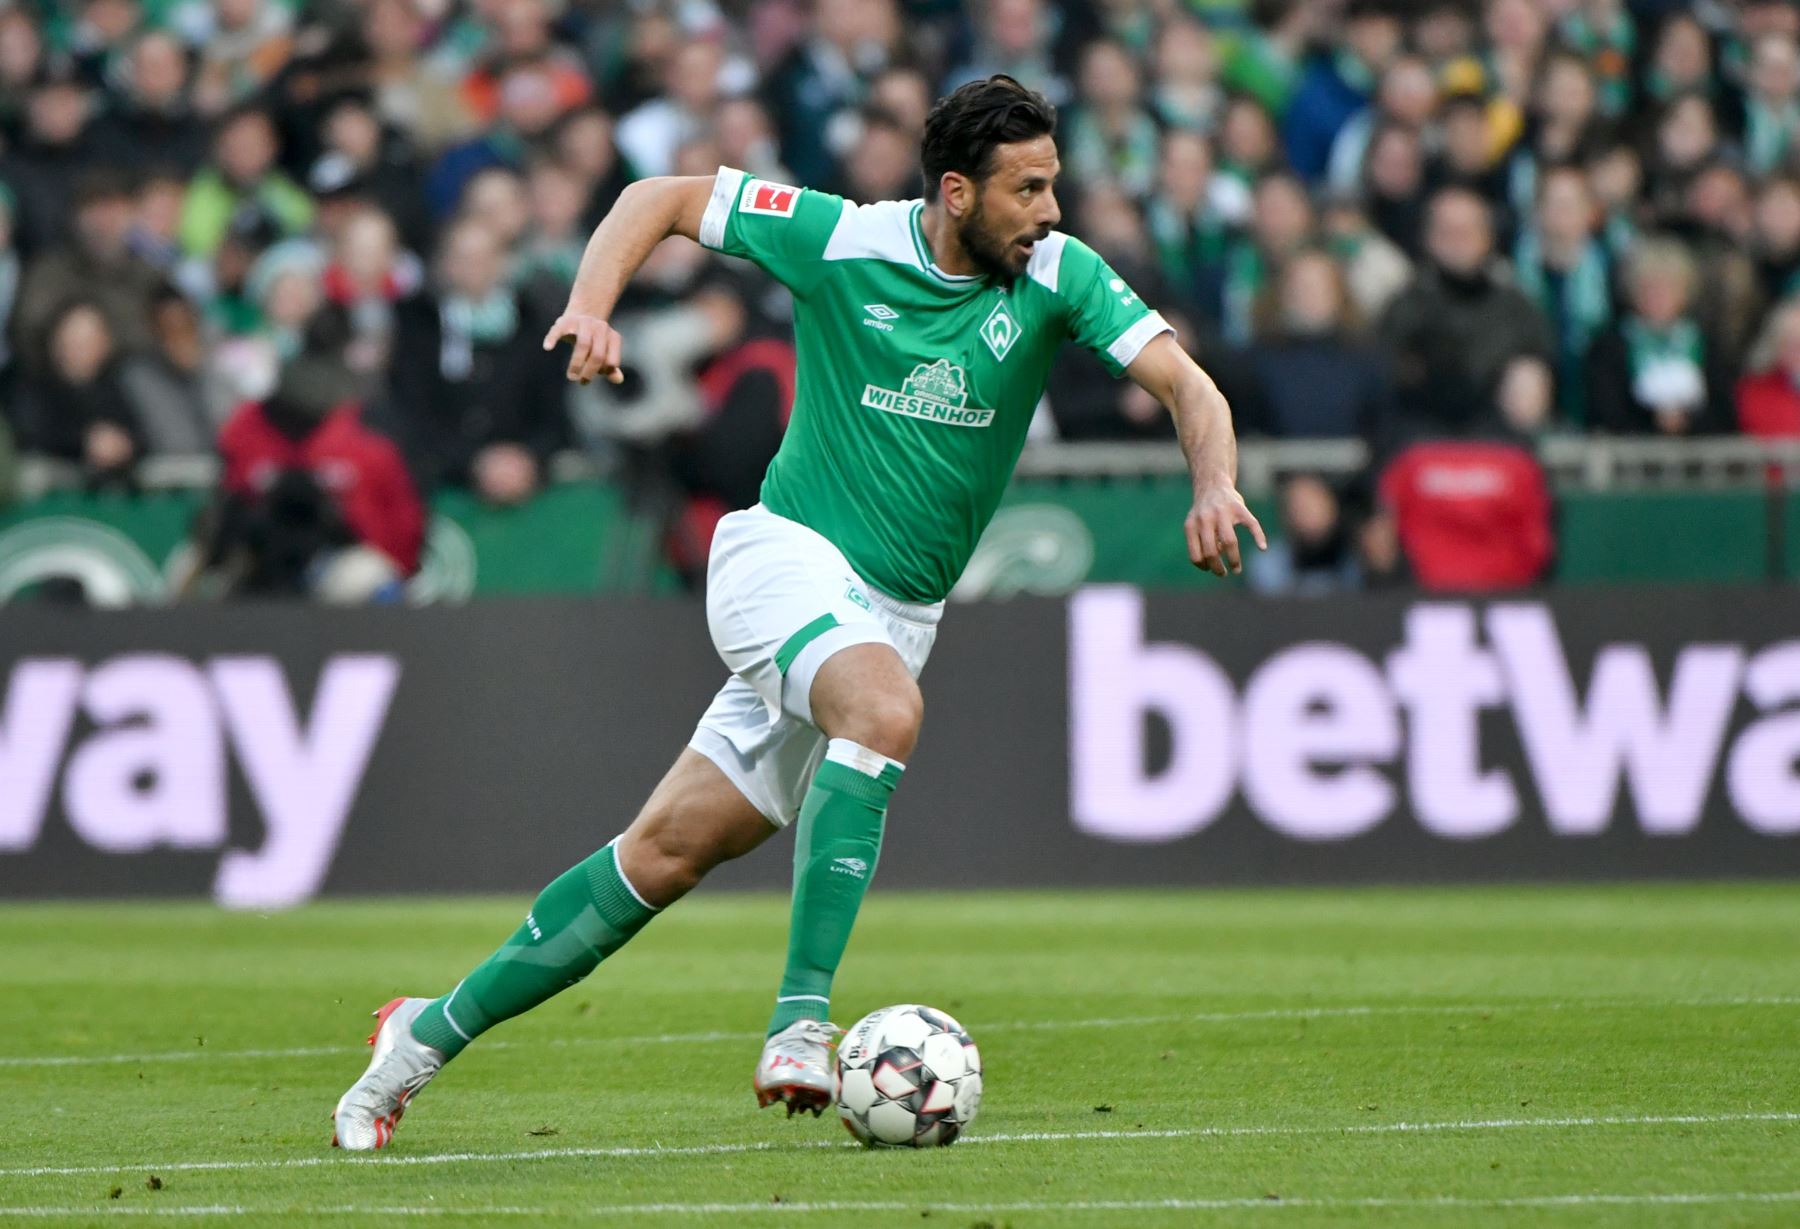 El delantero peruano de Bremen, Claudio Pizarro, corre con la pelota durante el partido de fútbol de primera división de la Bundesliga alemana Werder Bremen - BVB Borussia Dortmund.
Foto: AFP